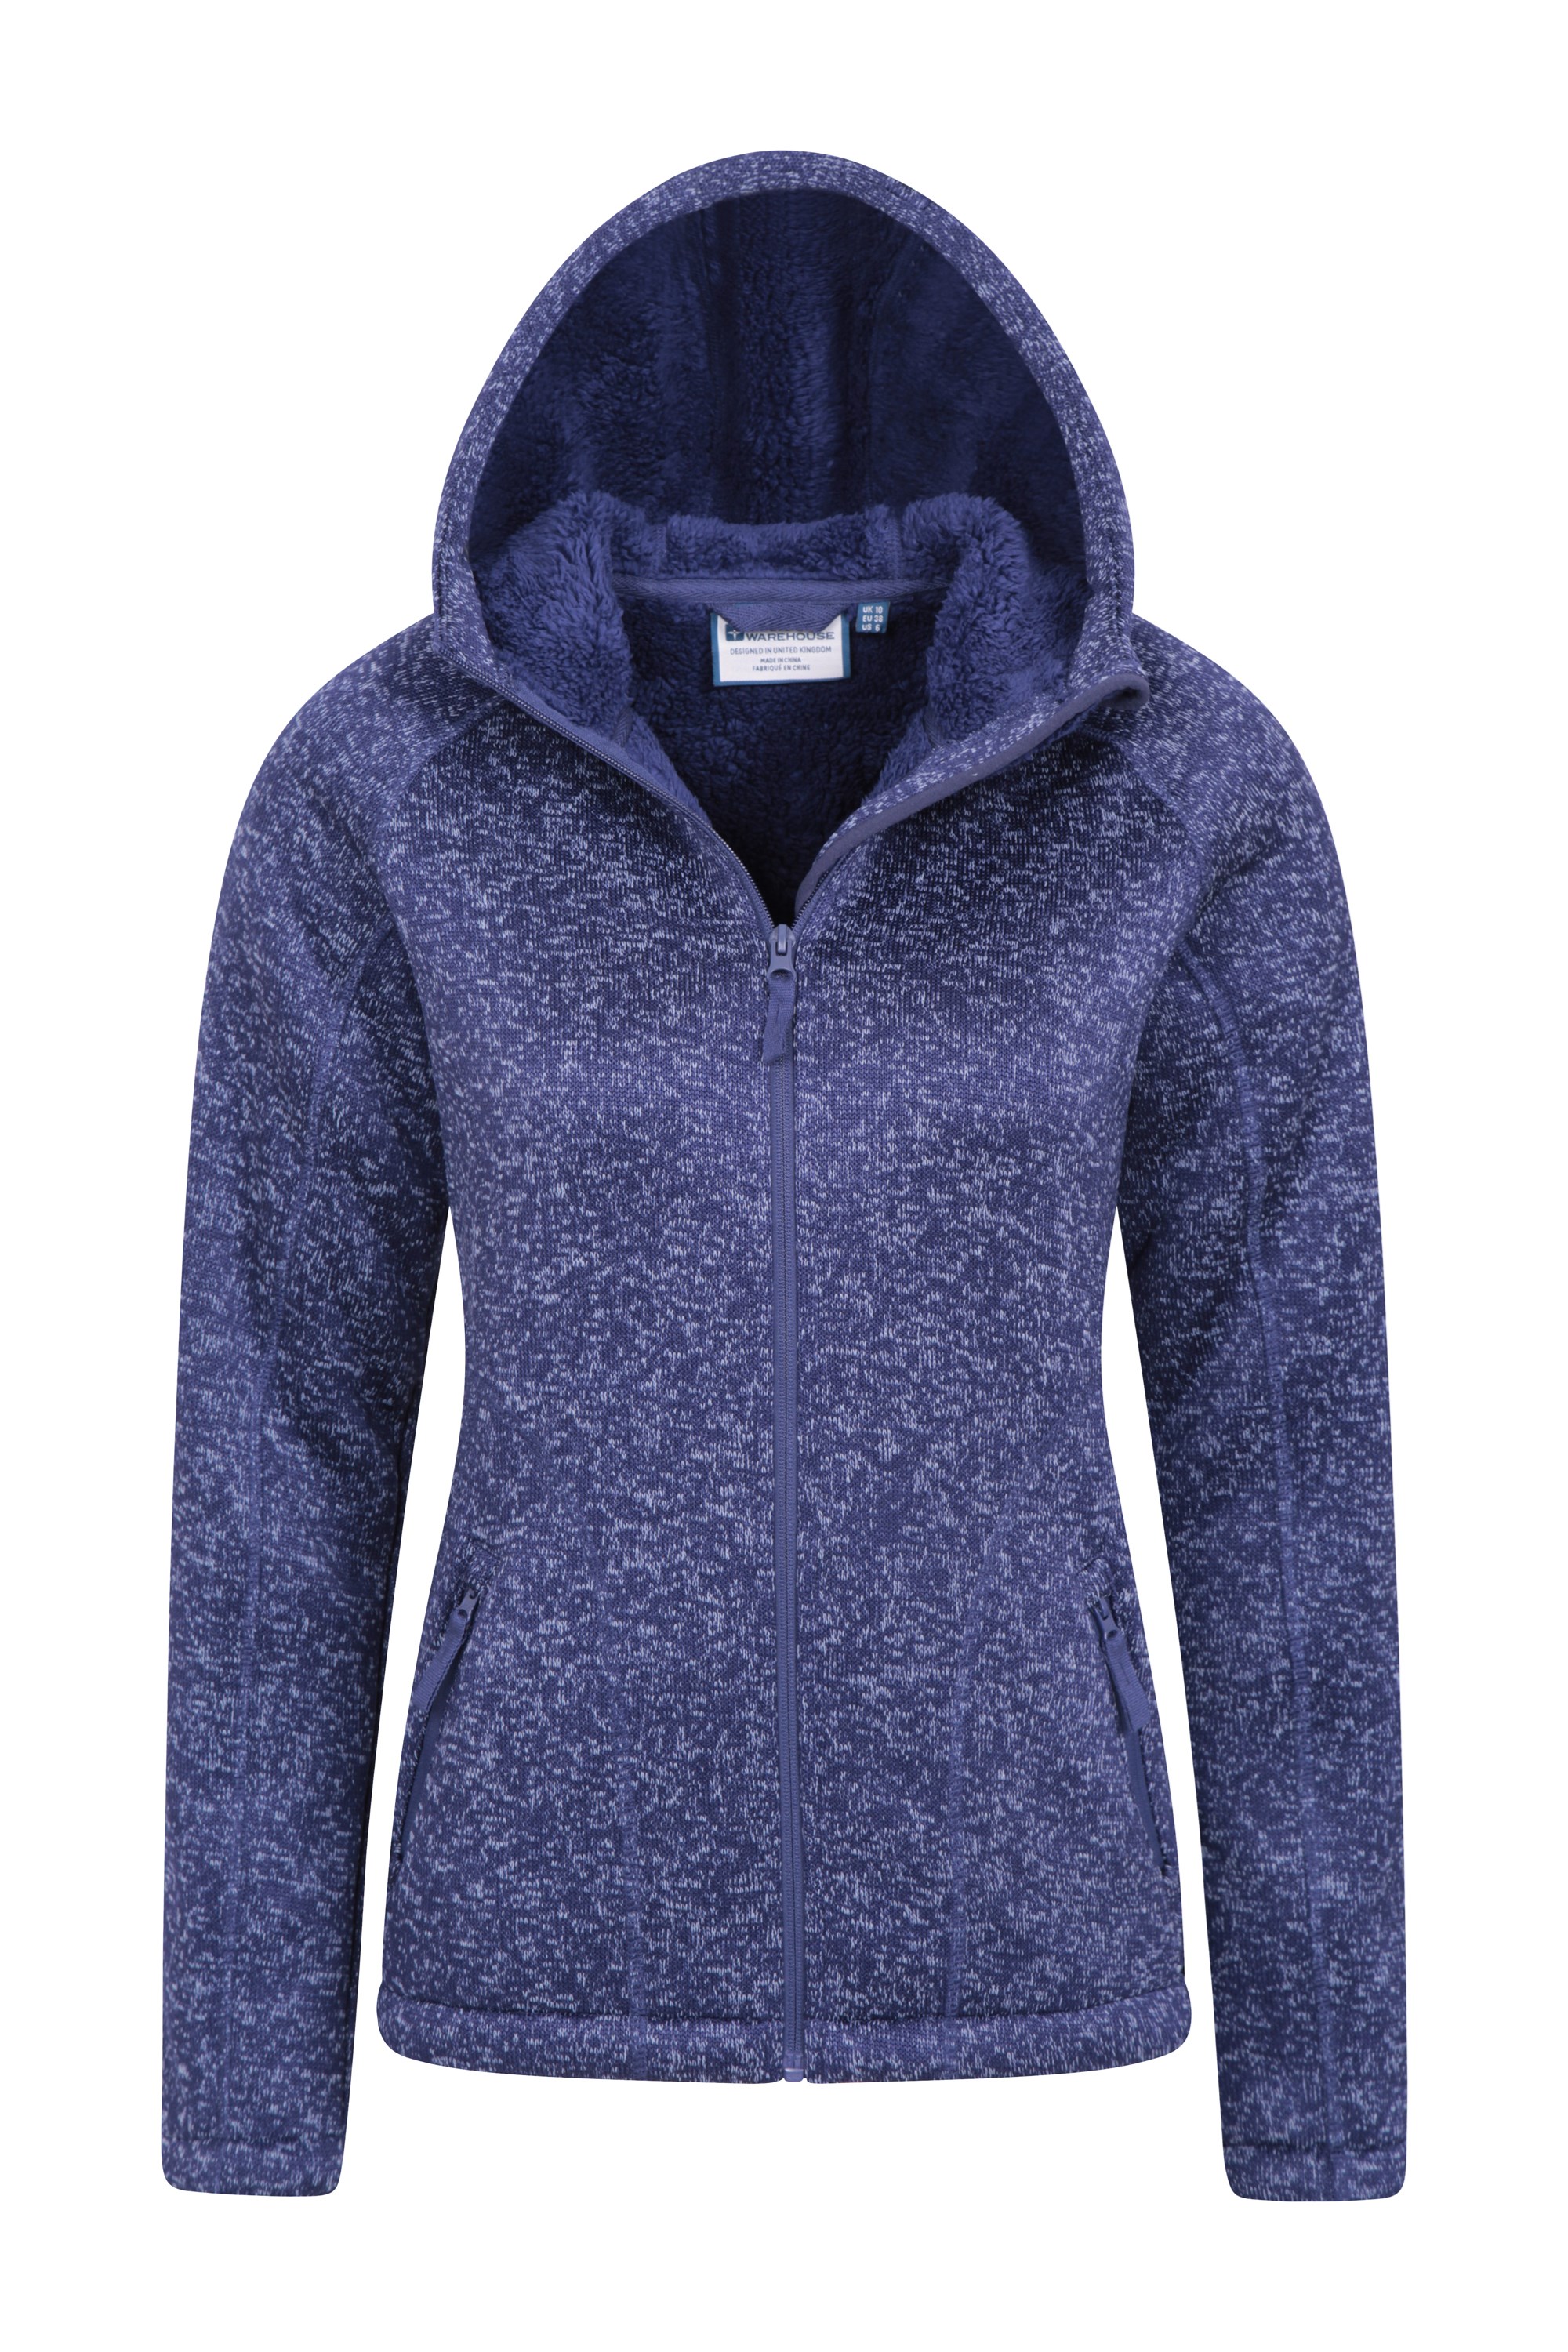 women's fleece lined hoodie